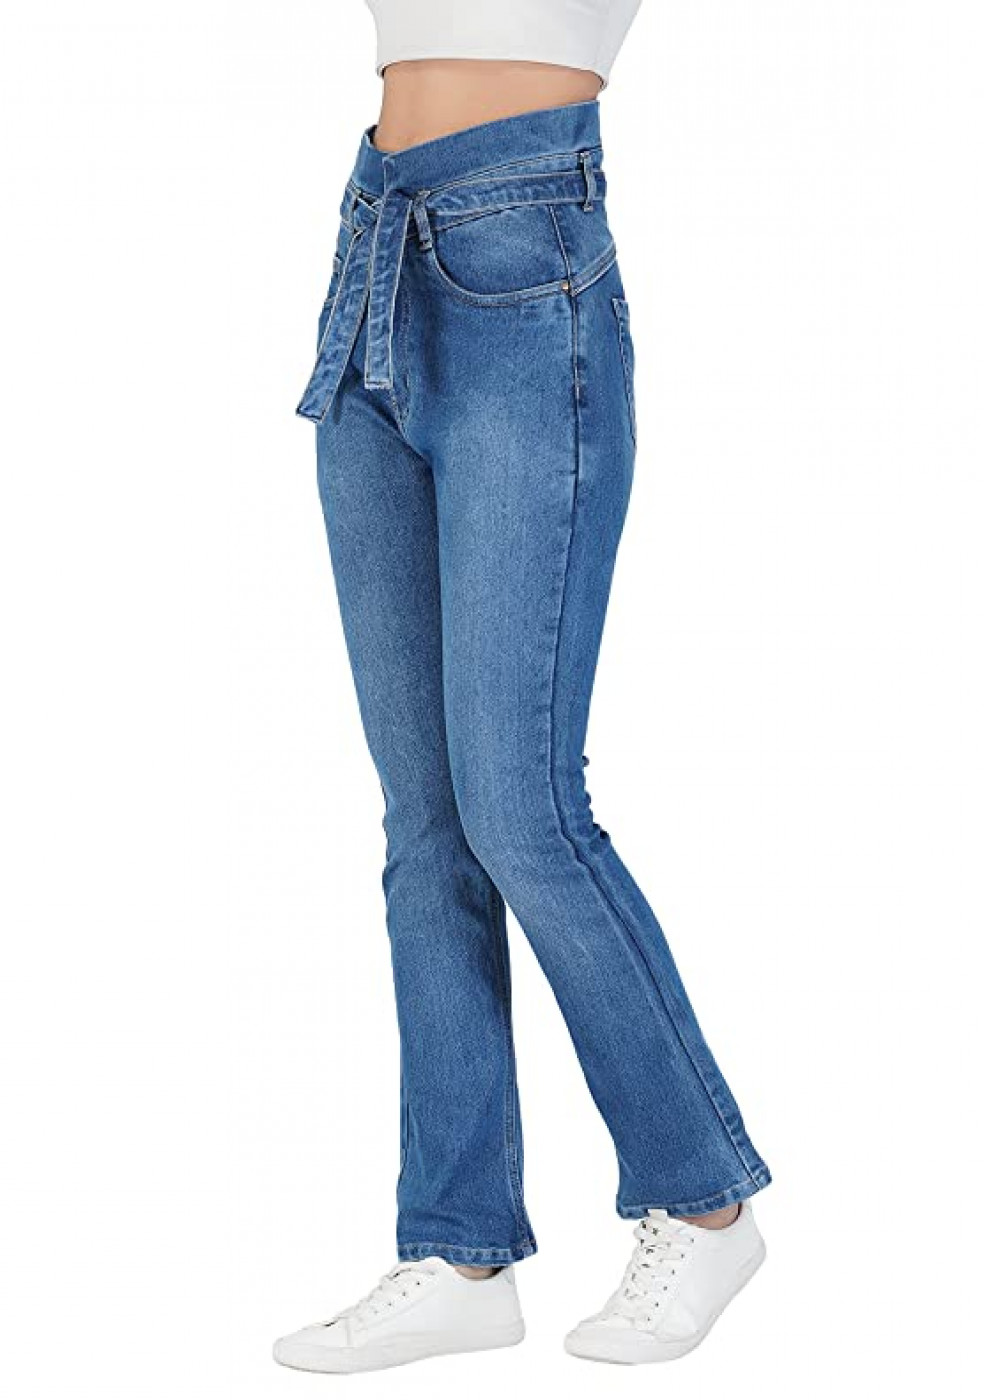 Women Stretchable Cotton Blue Jeans